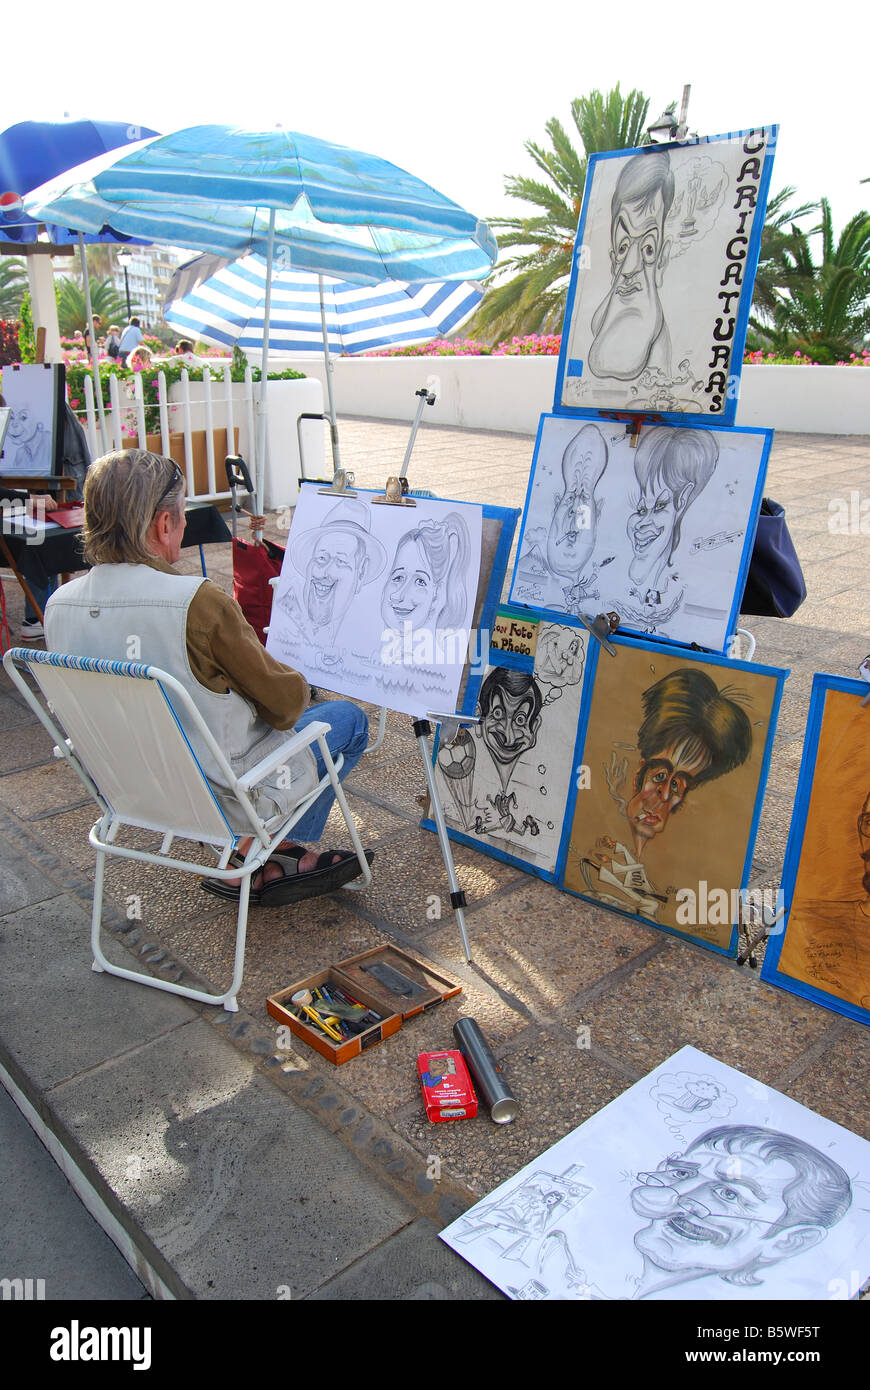 Caricature artist on promenade, Puerto de La Cruz, Tenerife, Canary Islands, Spain Stock Photo